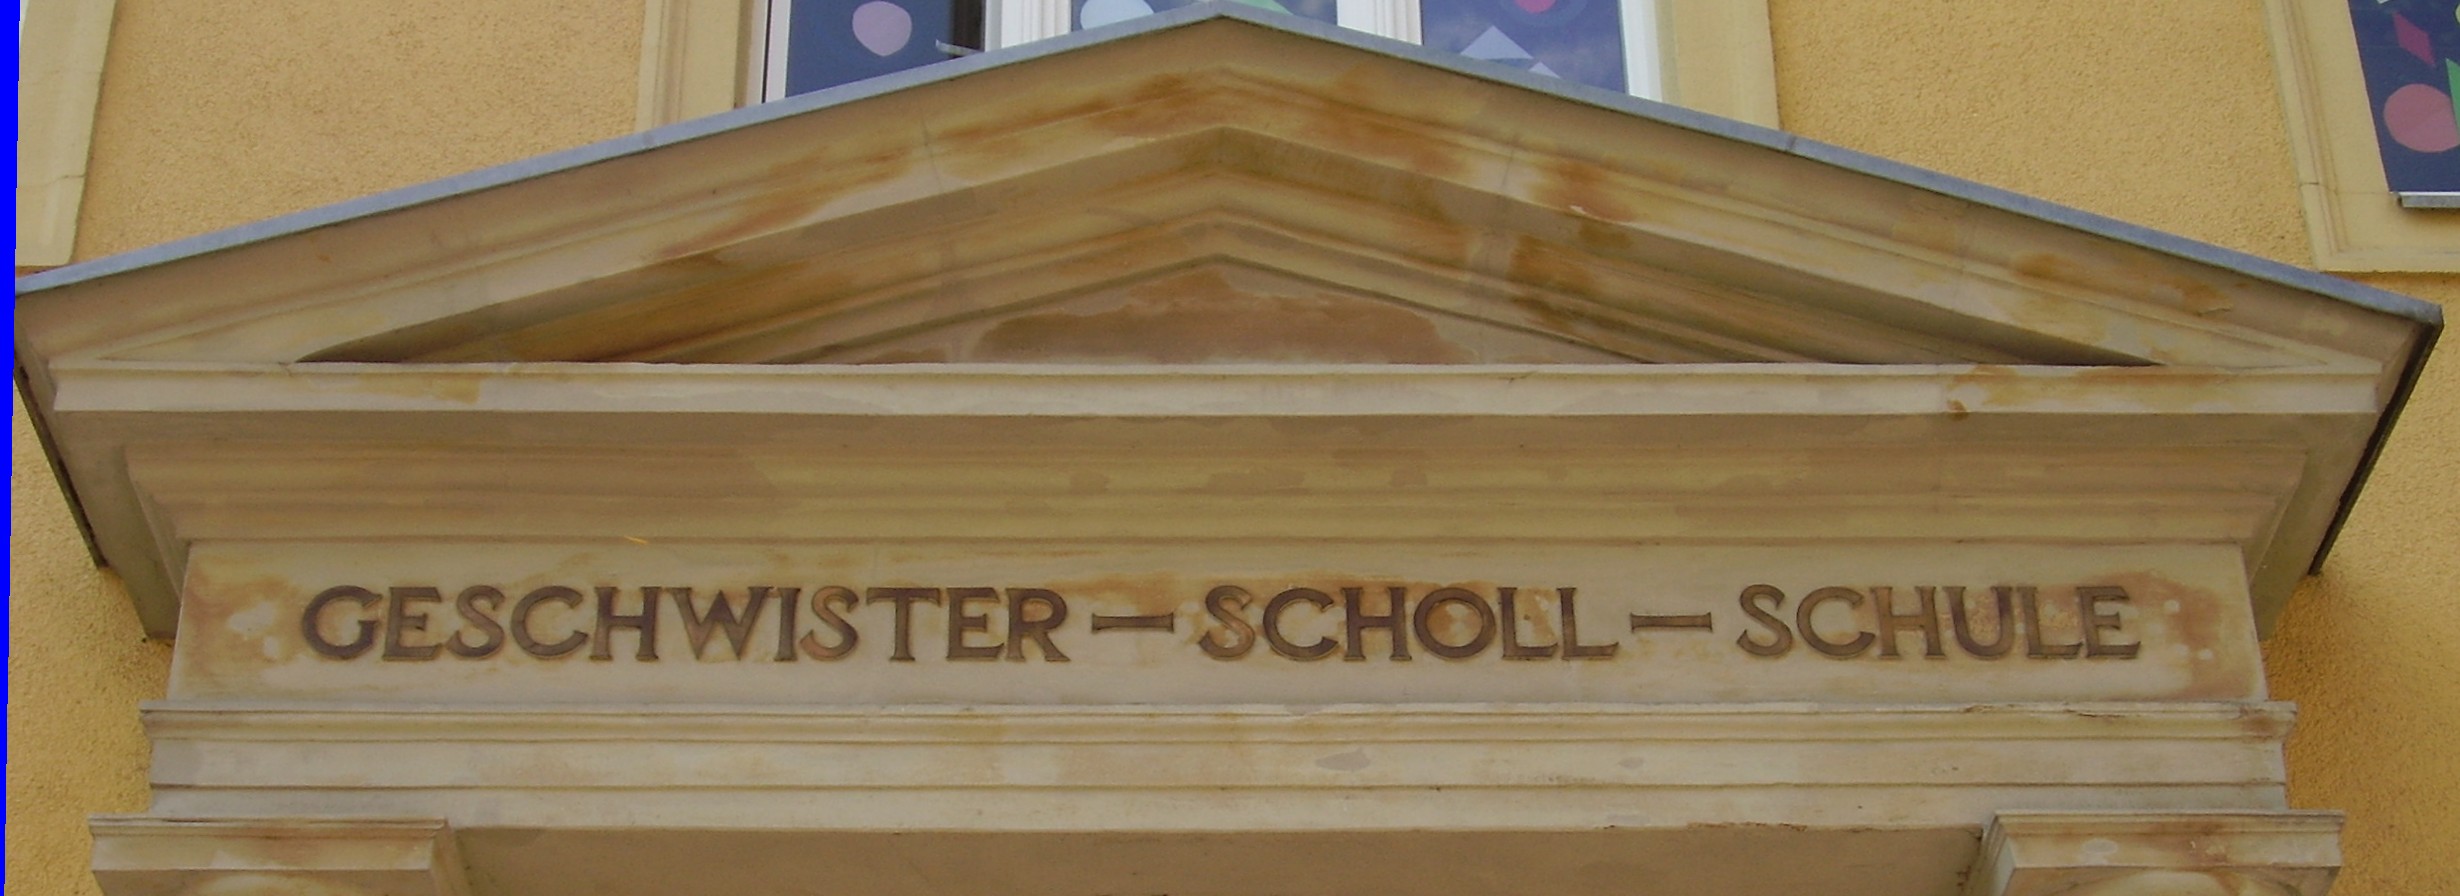 Fronton d'une école où l'on peut lire Geschwister-Scholl-Schule